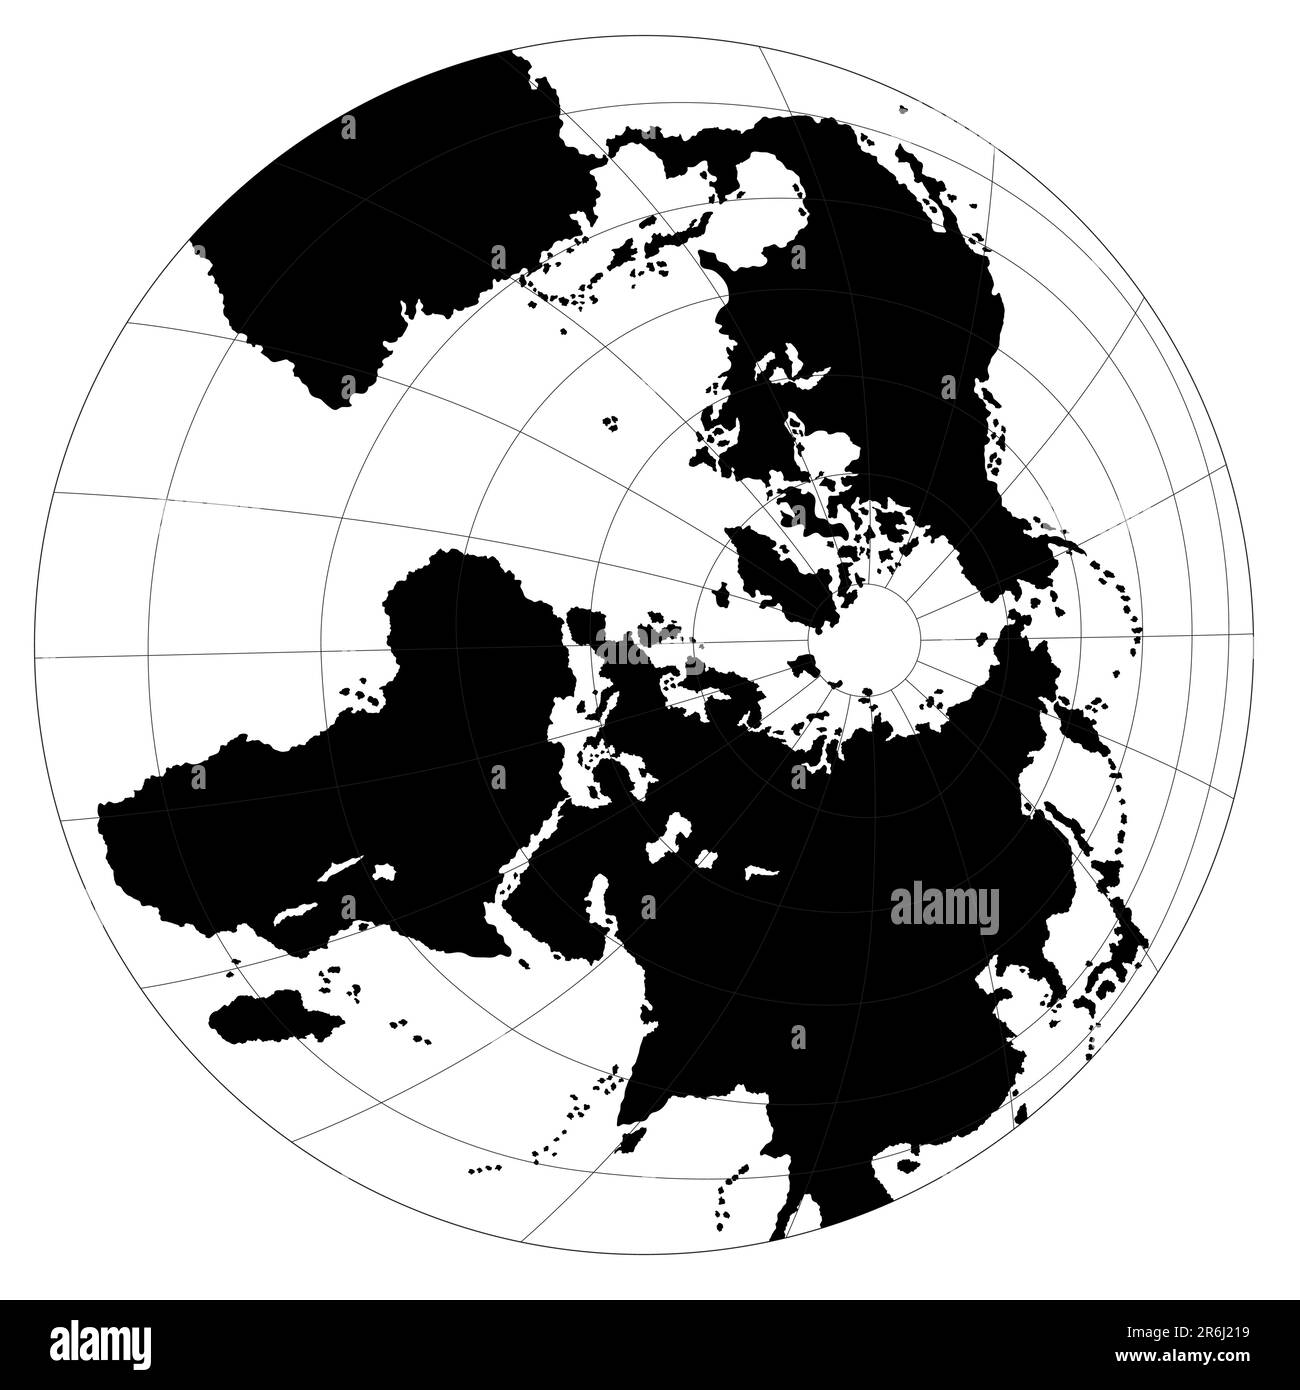 World map - highly detailed black & white illustration Stock Vector